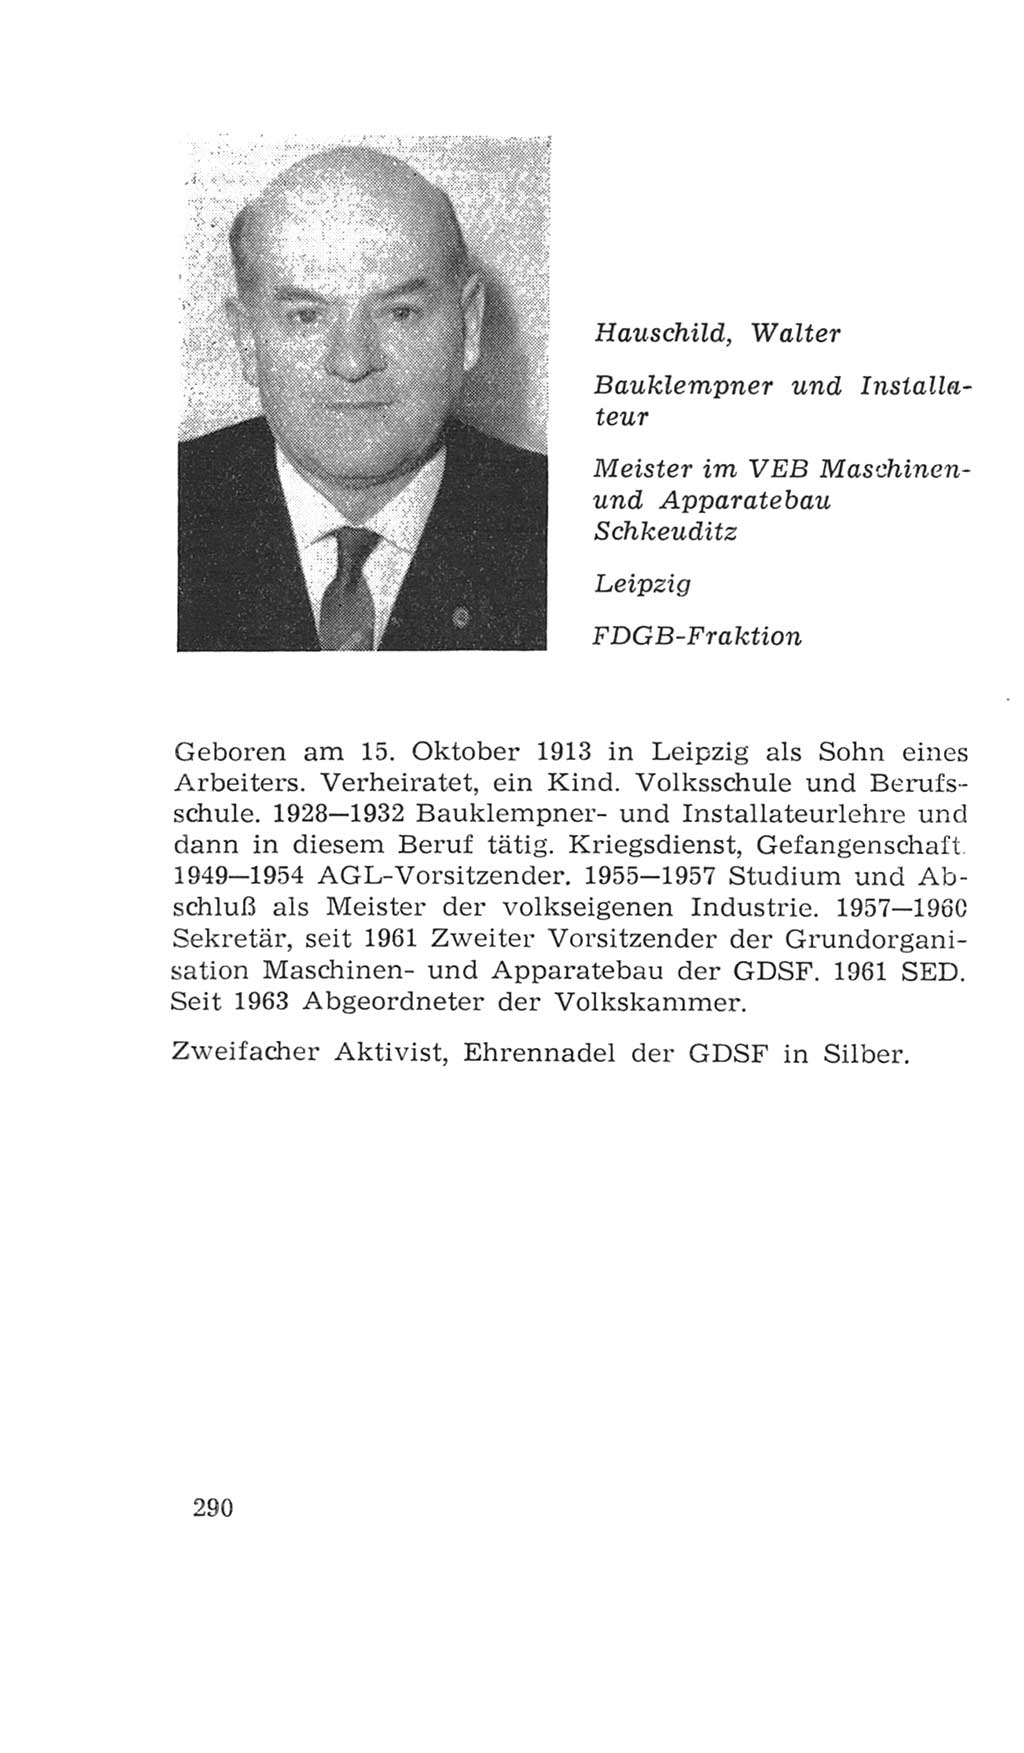 Volkskammer (VK) der Deutschen Demokratischen Republik (DDR), 4. Wahlperiode 1963-1967, Seite 290 (VK. DDR 4. WP. 1963-1967, S. 290)